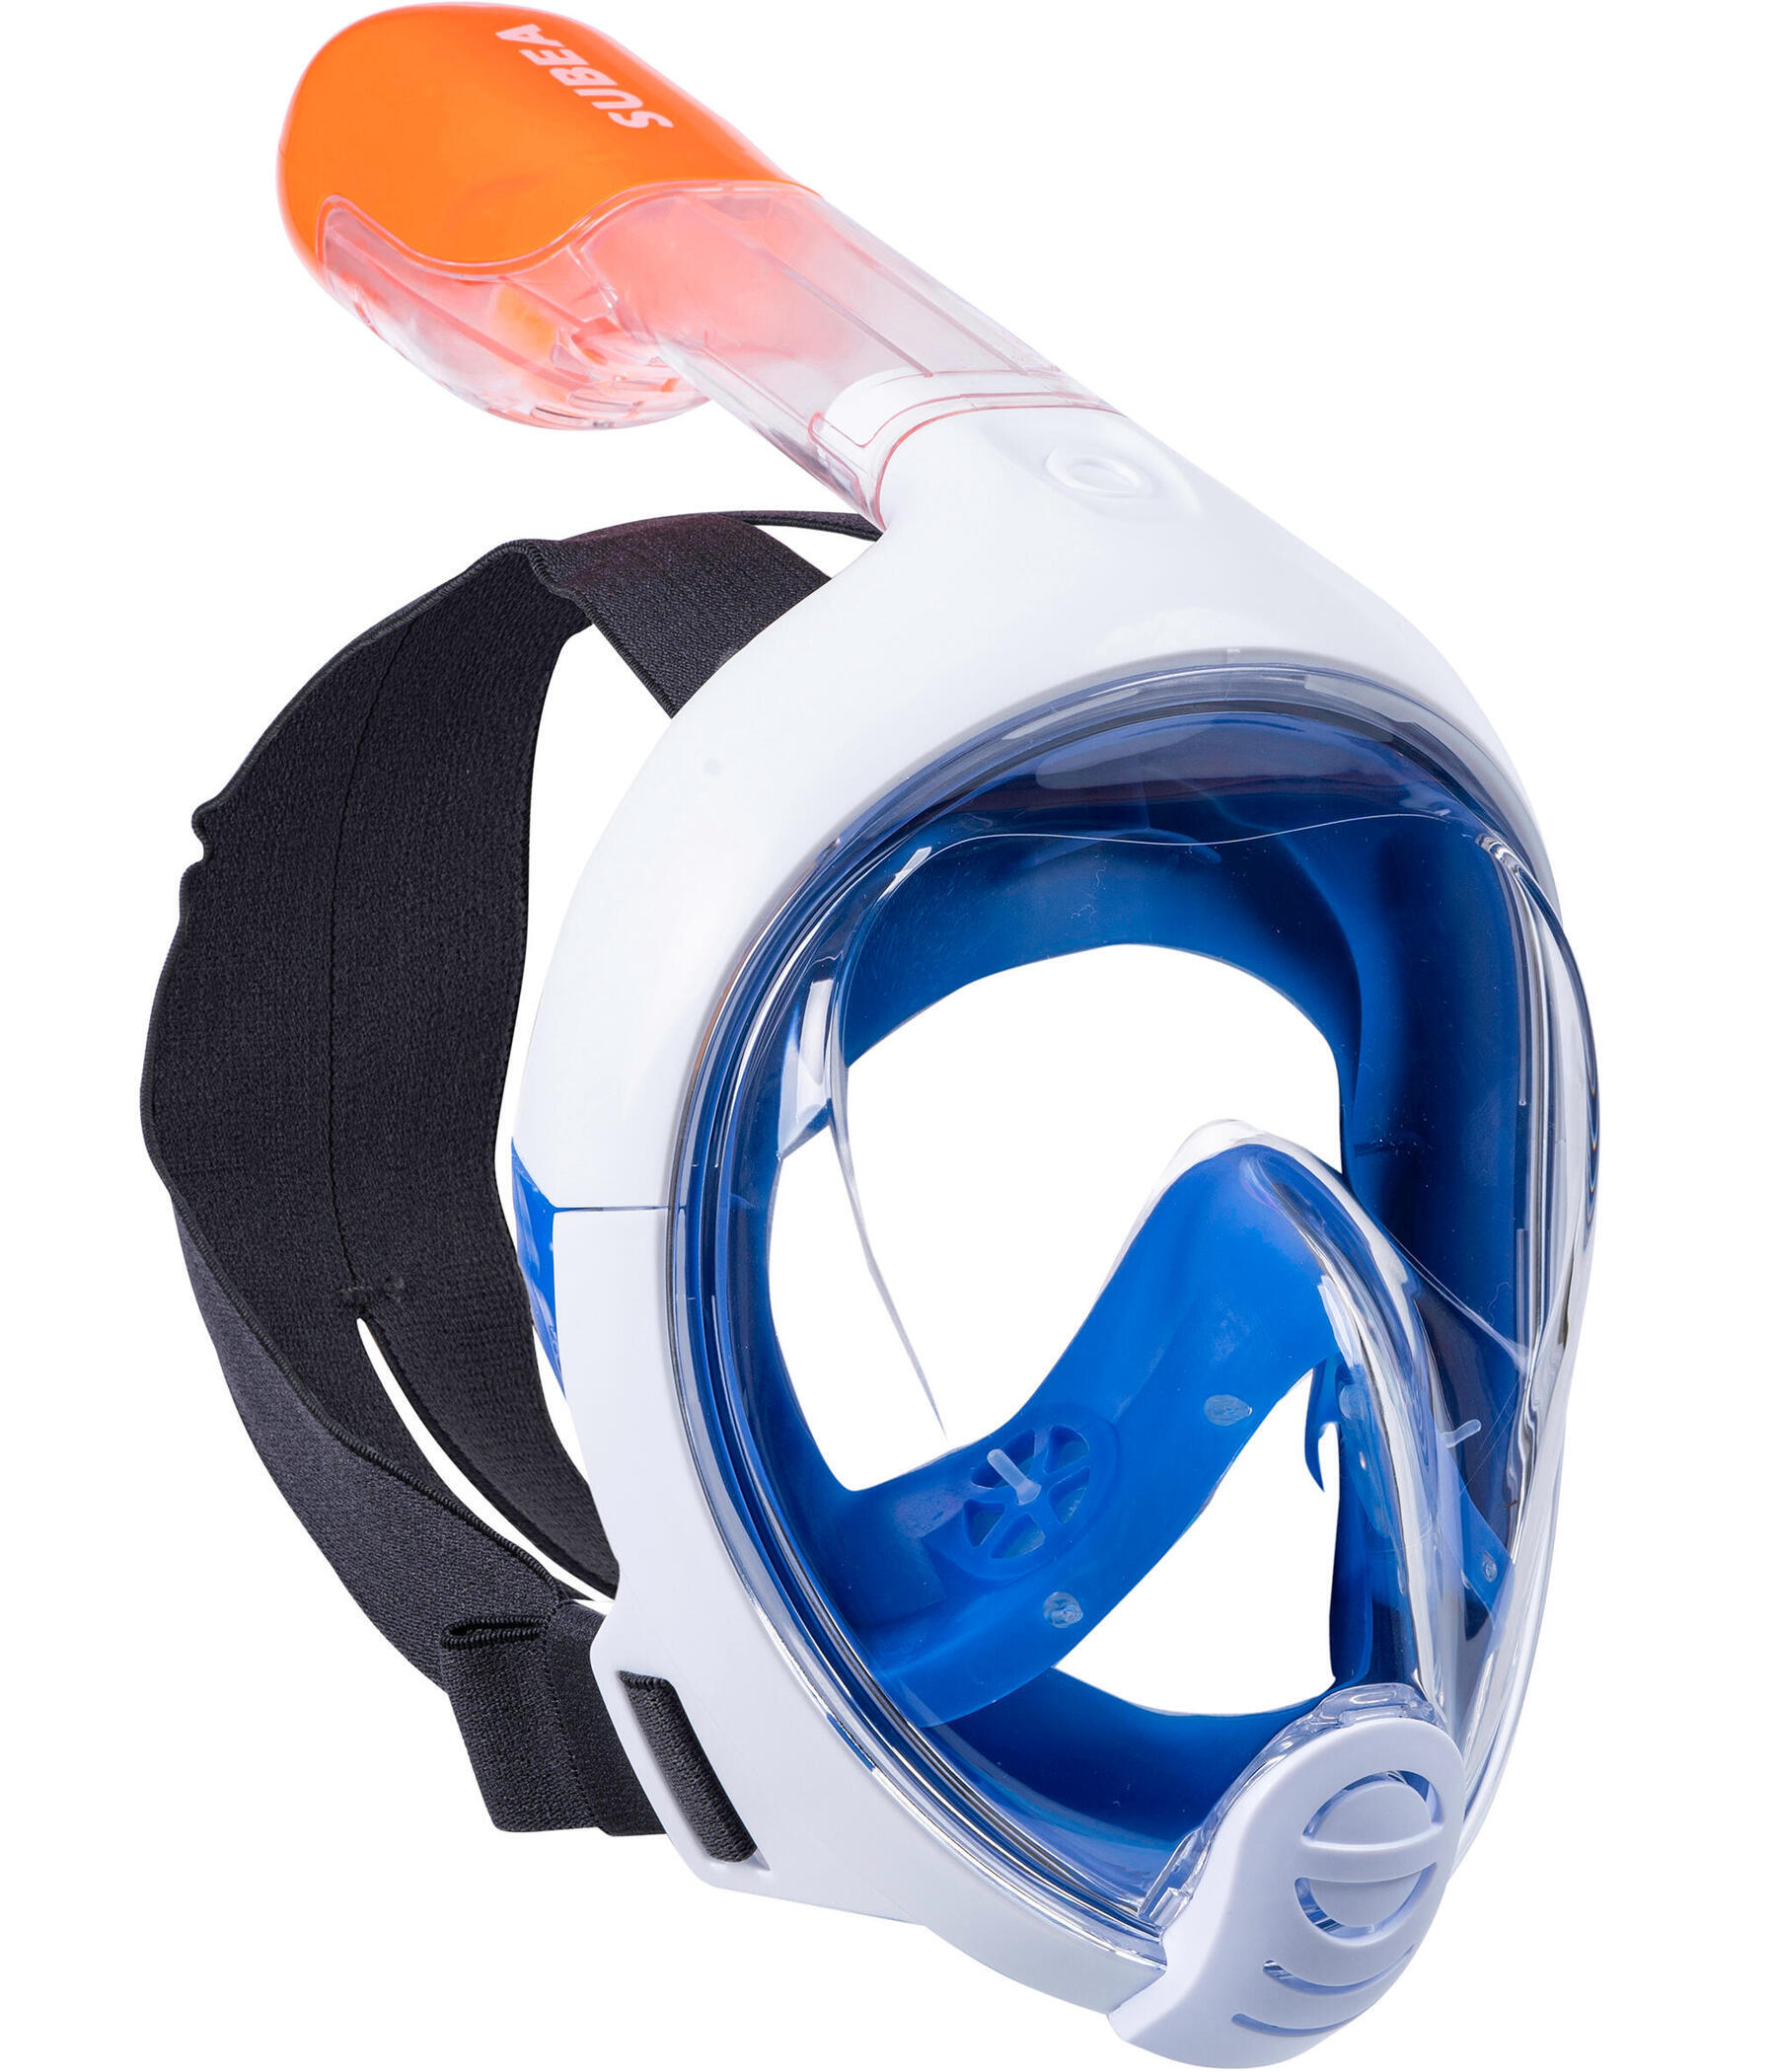 Comment réparer un masque snorkeling